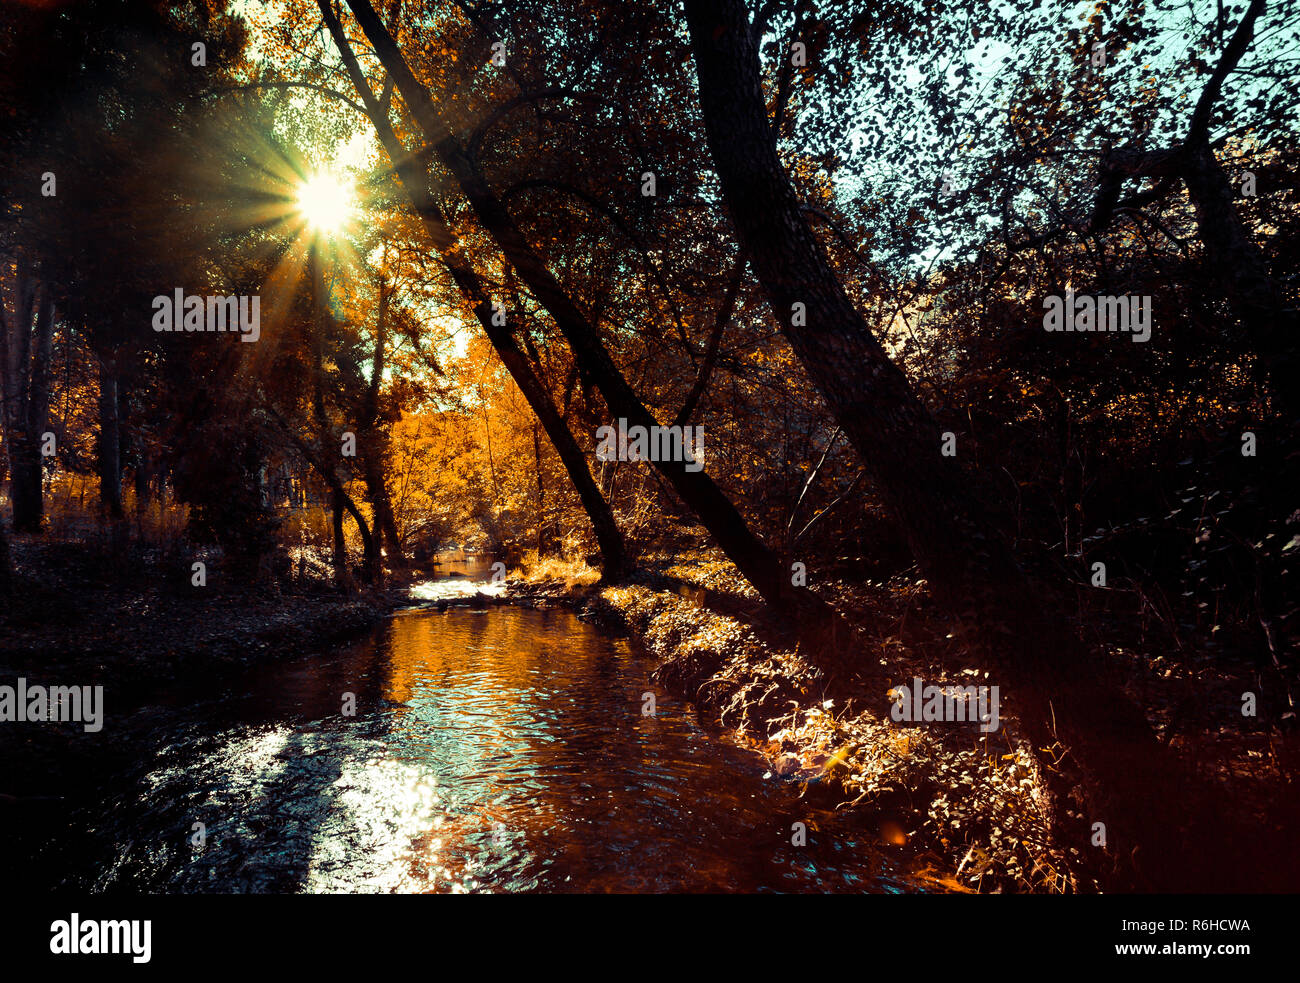 Très beau paysage d'automne avec la lumière du soleil filtrant à travers les arbres et se reflétant dans l'eau Banque D'Images